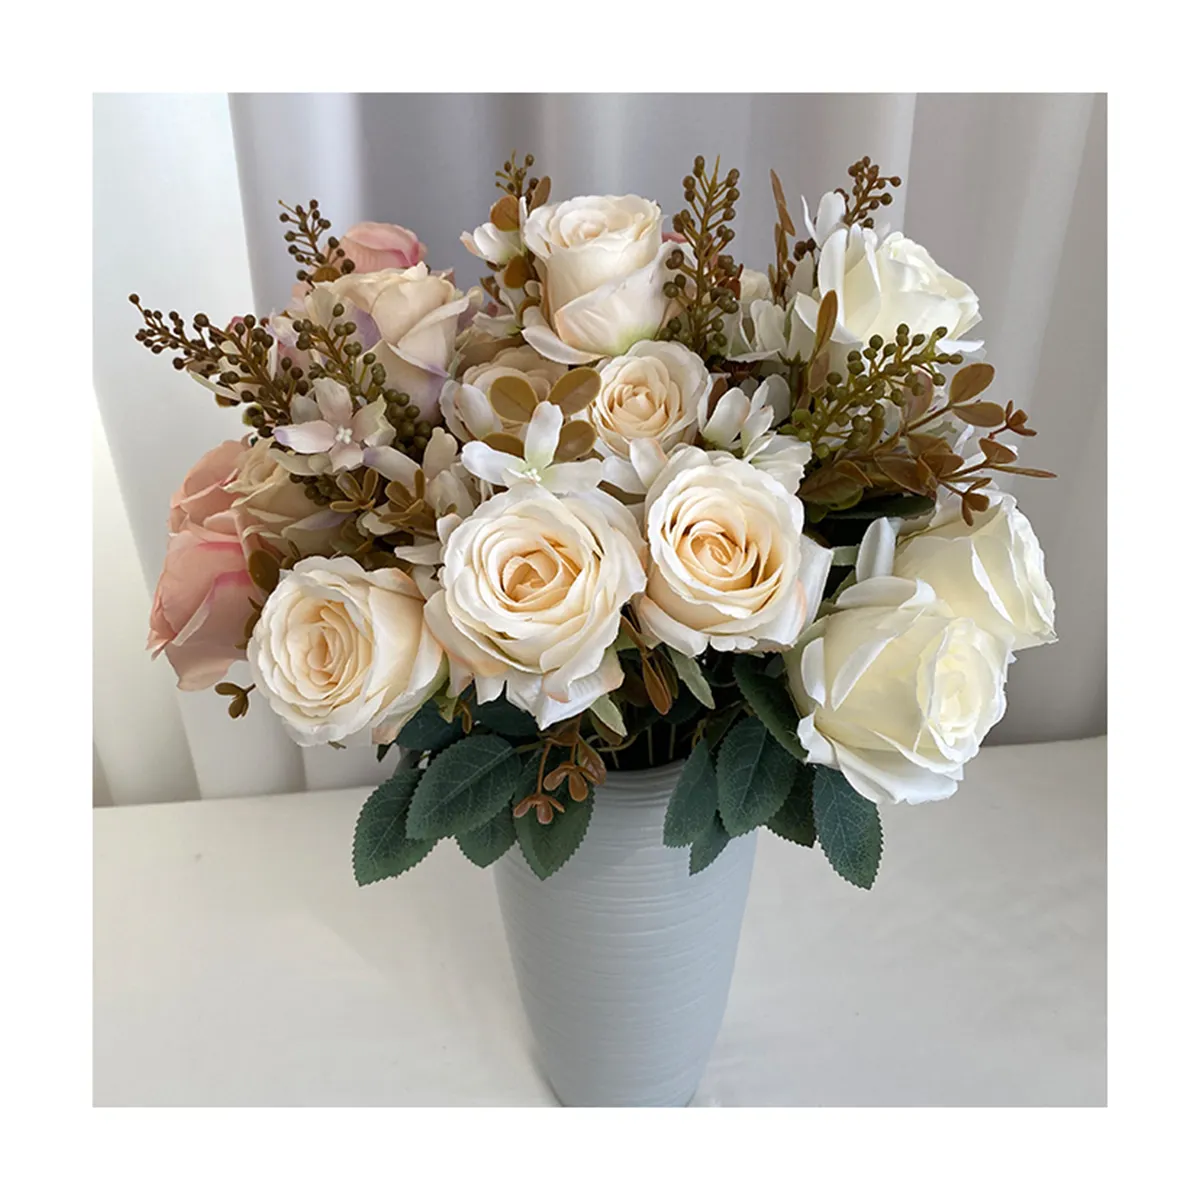 Ramo de rosas enjoyadas con 9 cabezas de flores, ramo de rosas de tela de seda hilada en QYY-273, venta al por mayor de fábrica china